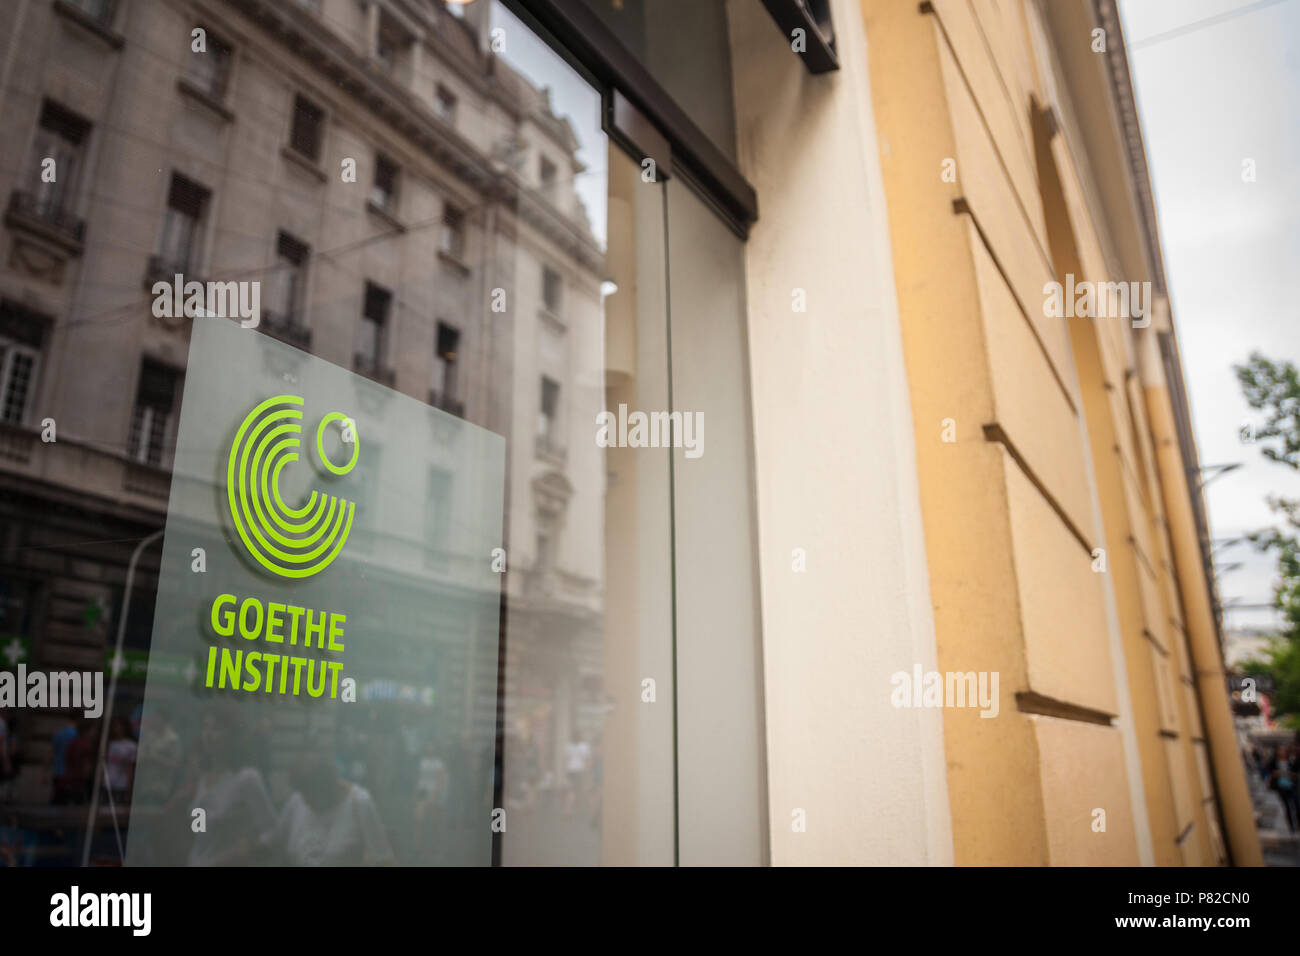 Belgrado, Serbia - luglio 7, 2018: il Logo di Belgrado il Goethe Institut nella strada principale della città. Goethe Institute è il centro culturale tedesco, Foto Stock